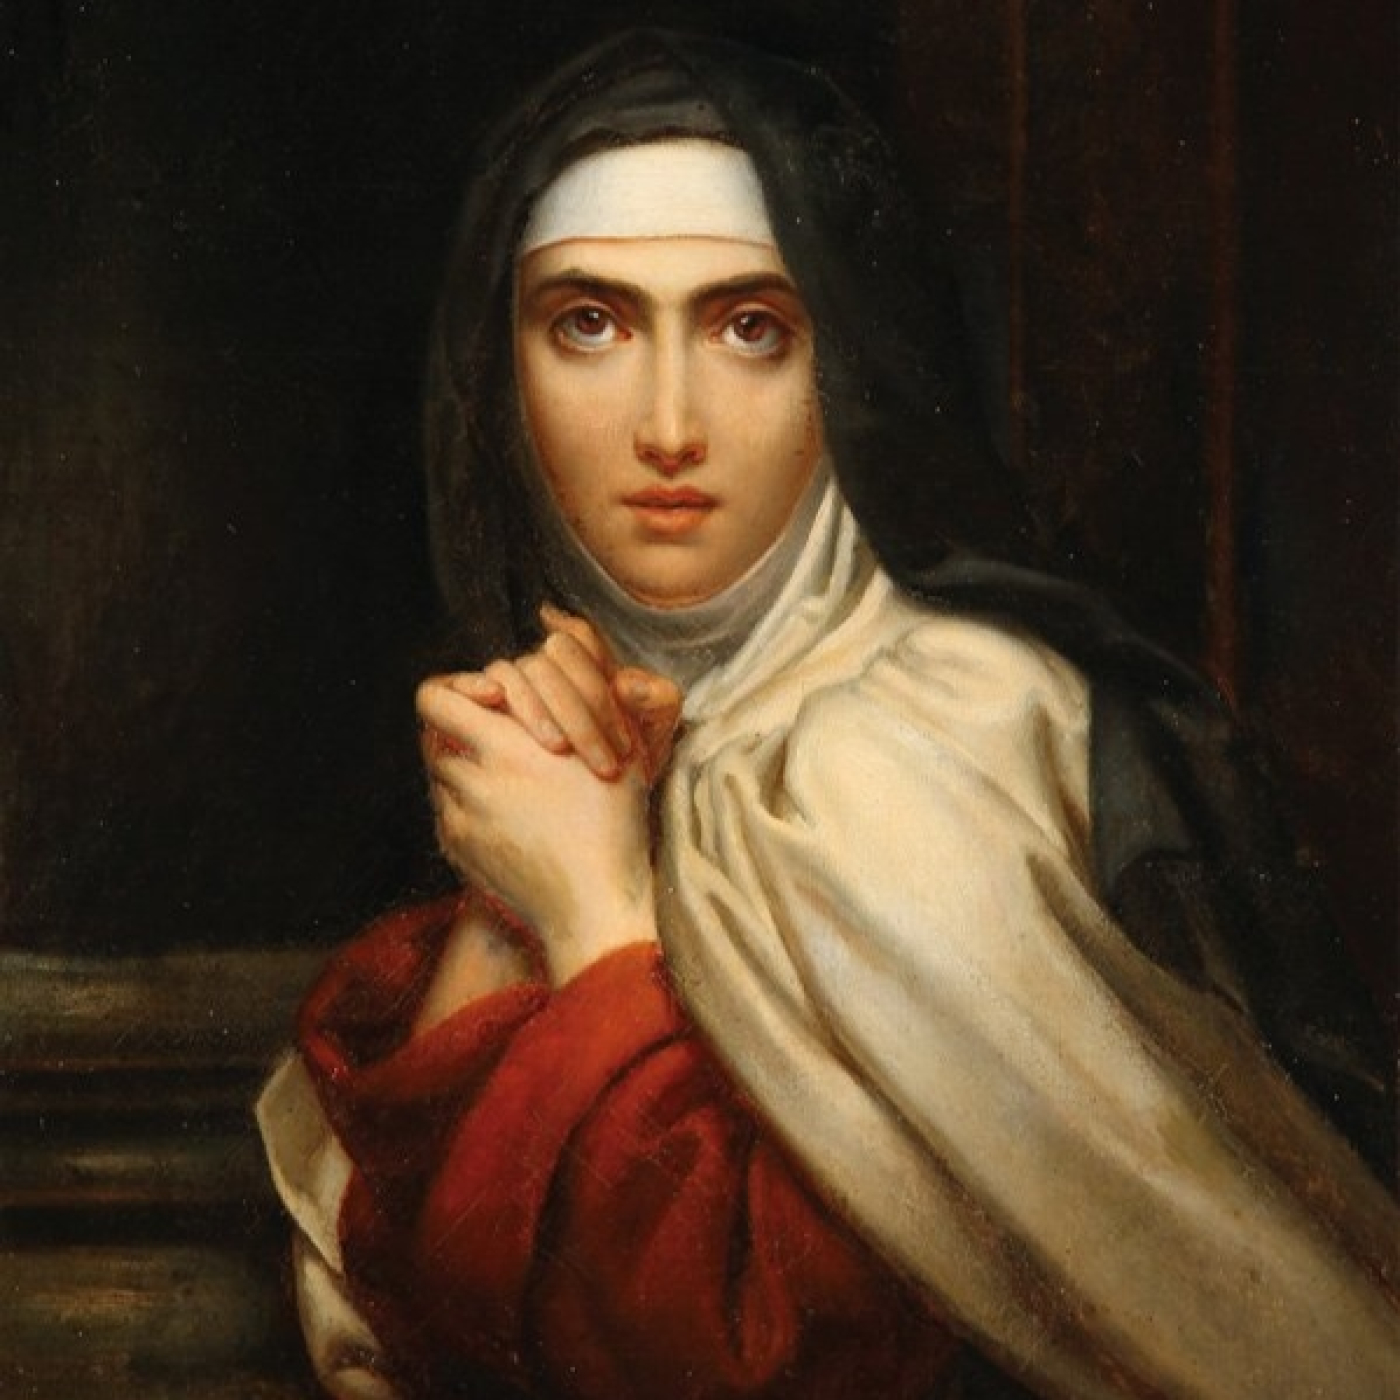 Avance del podcast Teresa de Ávila, la santa y la Inquisición